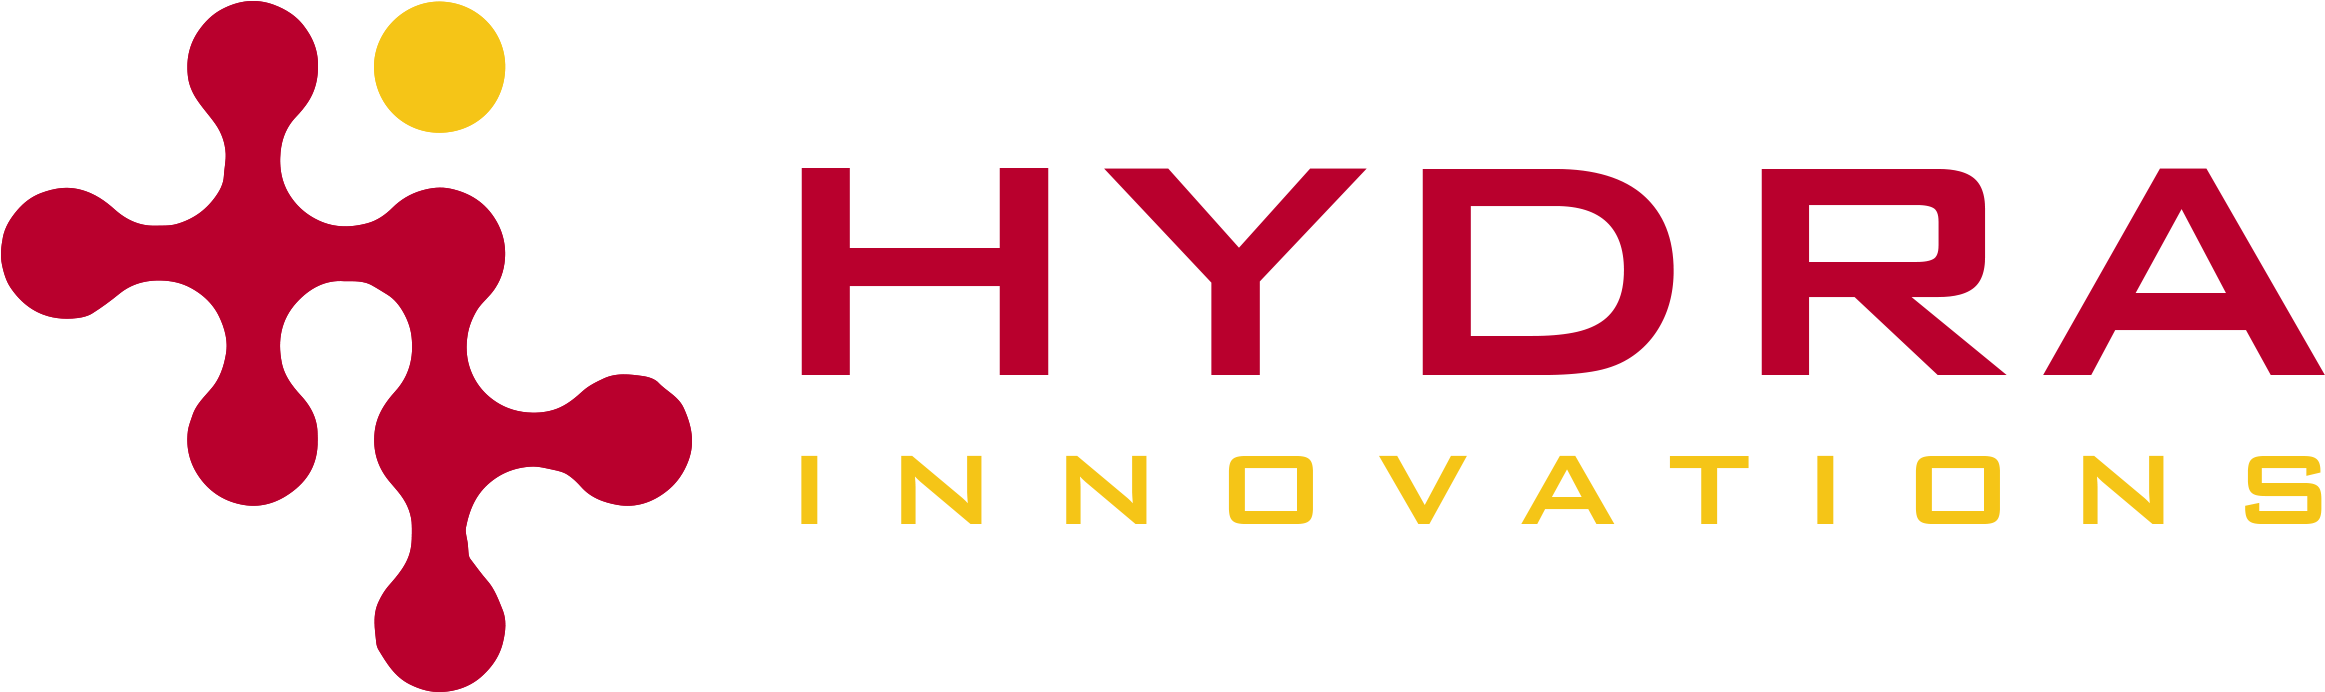 Hydra logo PNG image haute qualité image